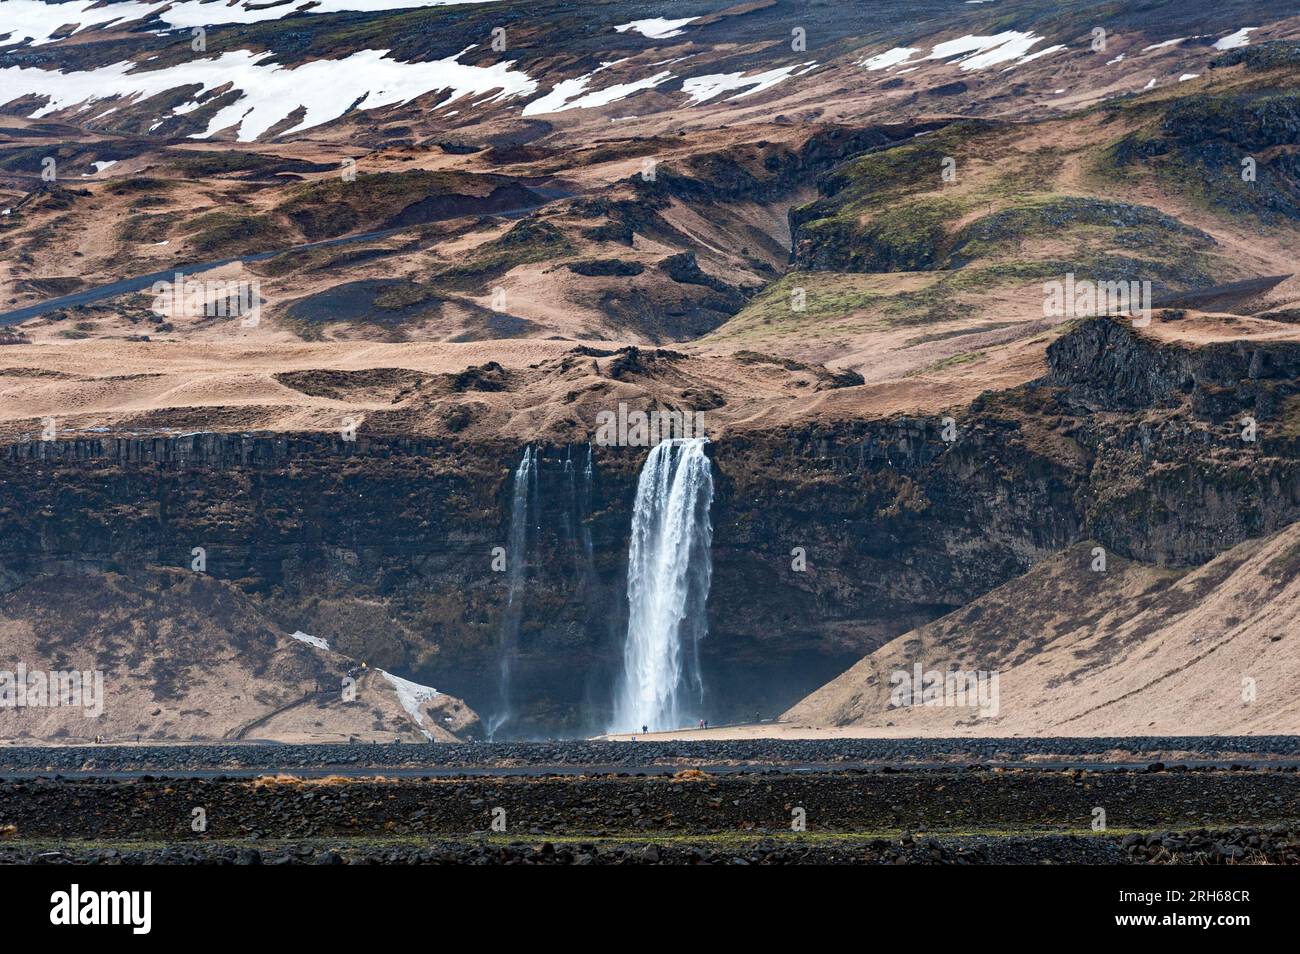 La spectaculaire cascade de Seljalandsfoss sur la côte sud de l'Islande, où la rivière coule sur une falaise de 60 mètres Banque D'Images